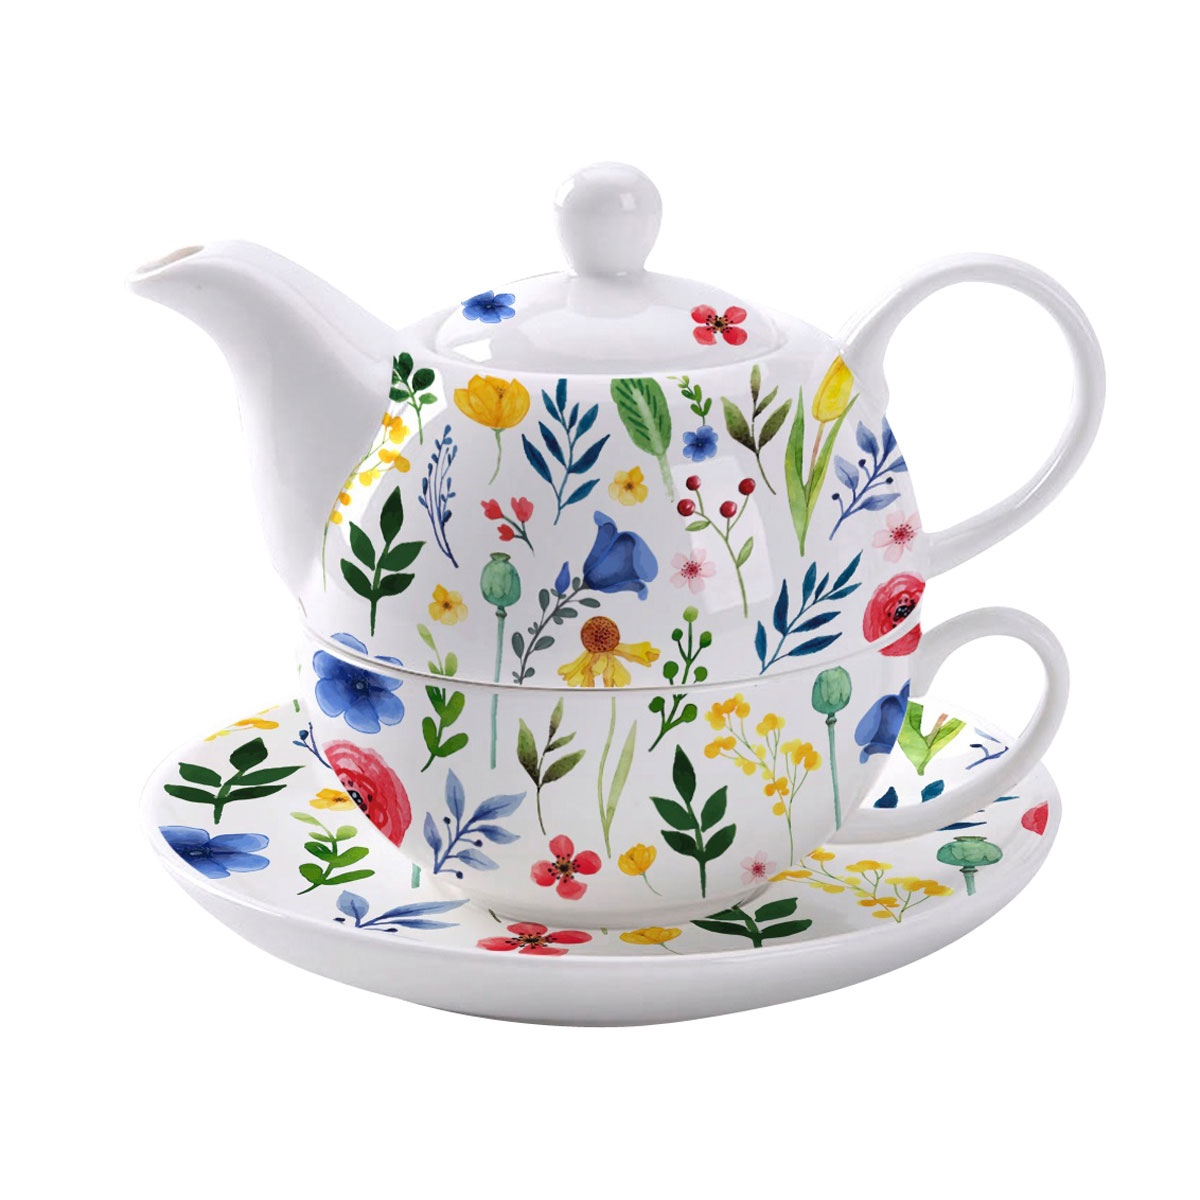 Teetasse mit Teekanne zum zuammenstellen buntes Blumenmuster Decor, Geschenkidee online kaufen